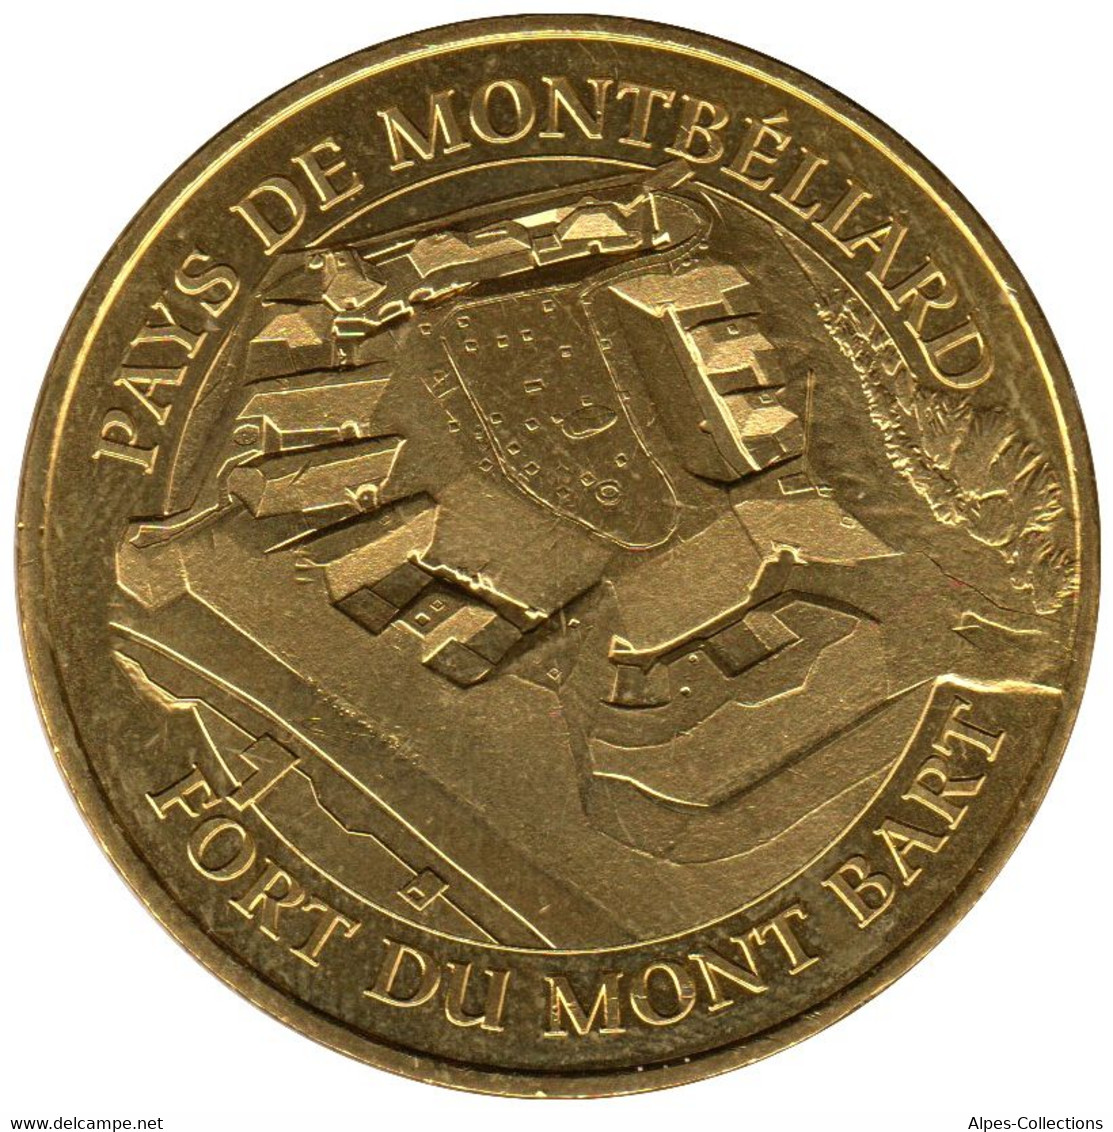 25-2312 - JETON TOURISTIQUE MDP - Pays De Montbéliard Fort Du Mont Bart - 2016.1 - 2016